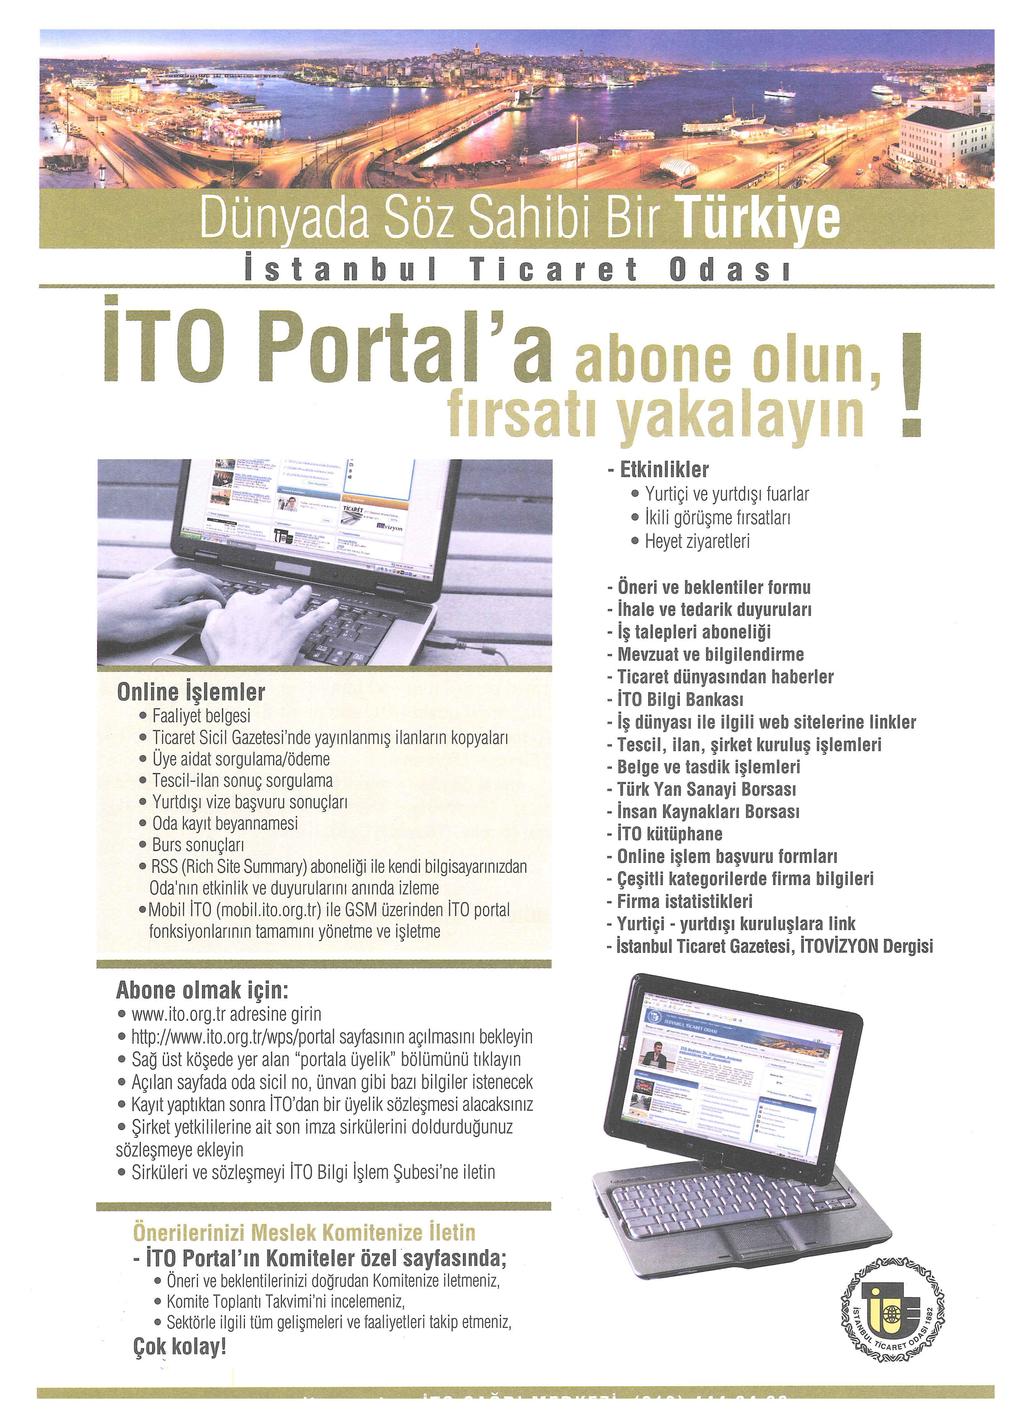 . istanbul ' ITO Portal a abone olun, 1 f1rsat1 yakalayin - Etkinlikler Yurtiçi ve yurtdışı fuarlar ikili görüşme fırsatları Heyet ziyaretleri Online işlemler Faaliyet belgesi Ticaret Sicil